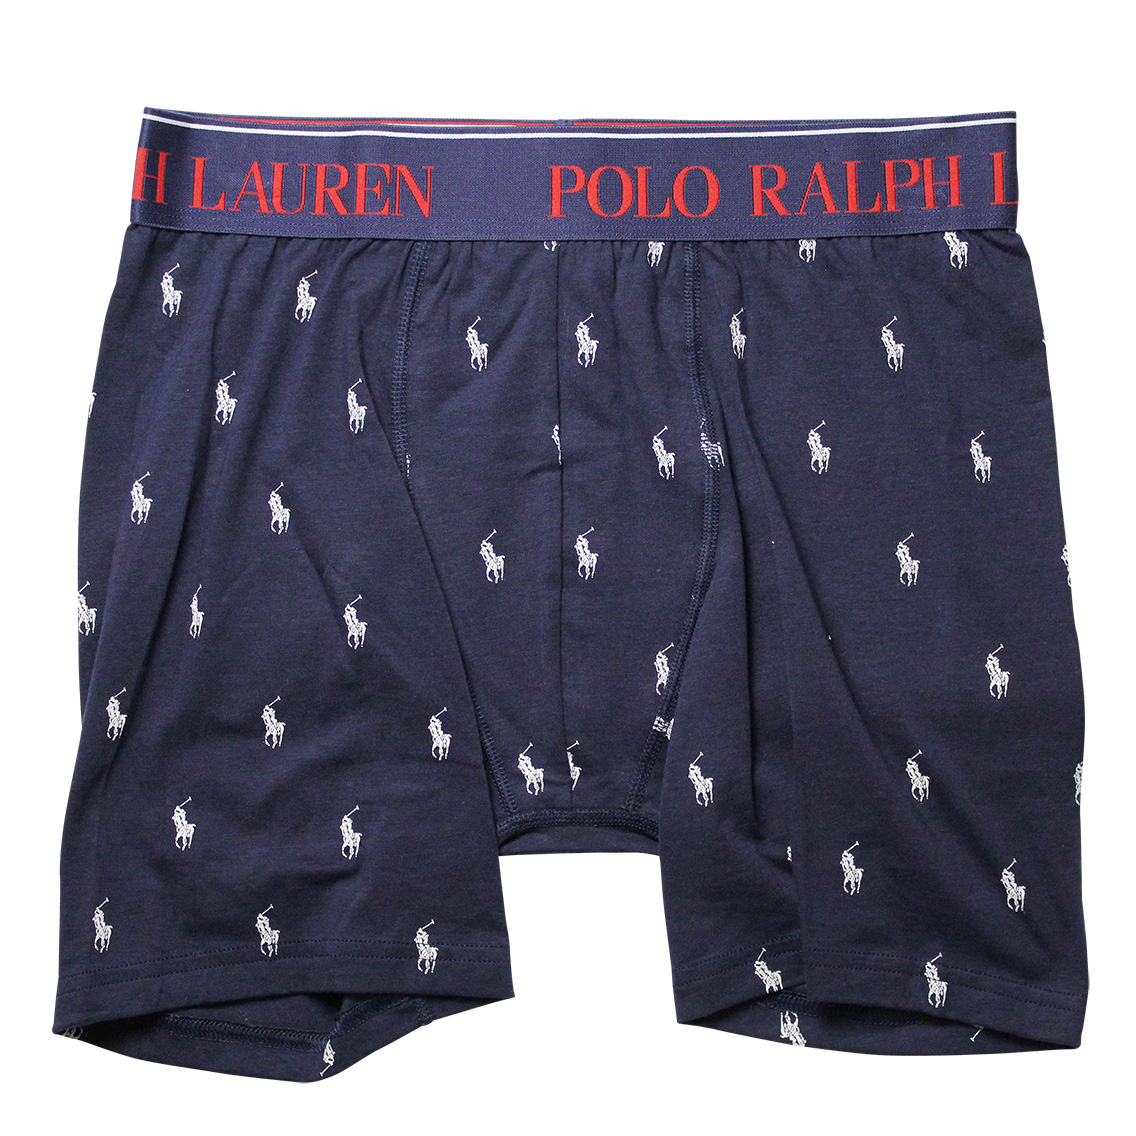 Polo Ralph Lauren (ポロラルフローレン)「L999HR-9B1」商品画像:ボクサーパンツ・男性下着の通販｜ルカノール